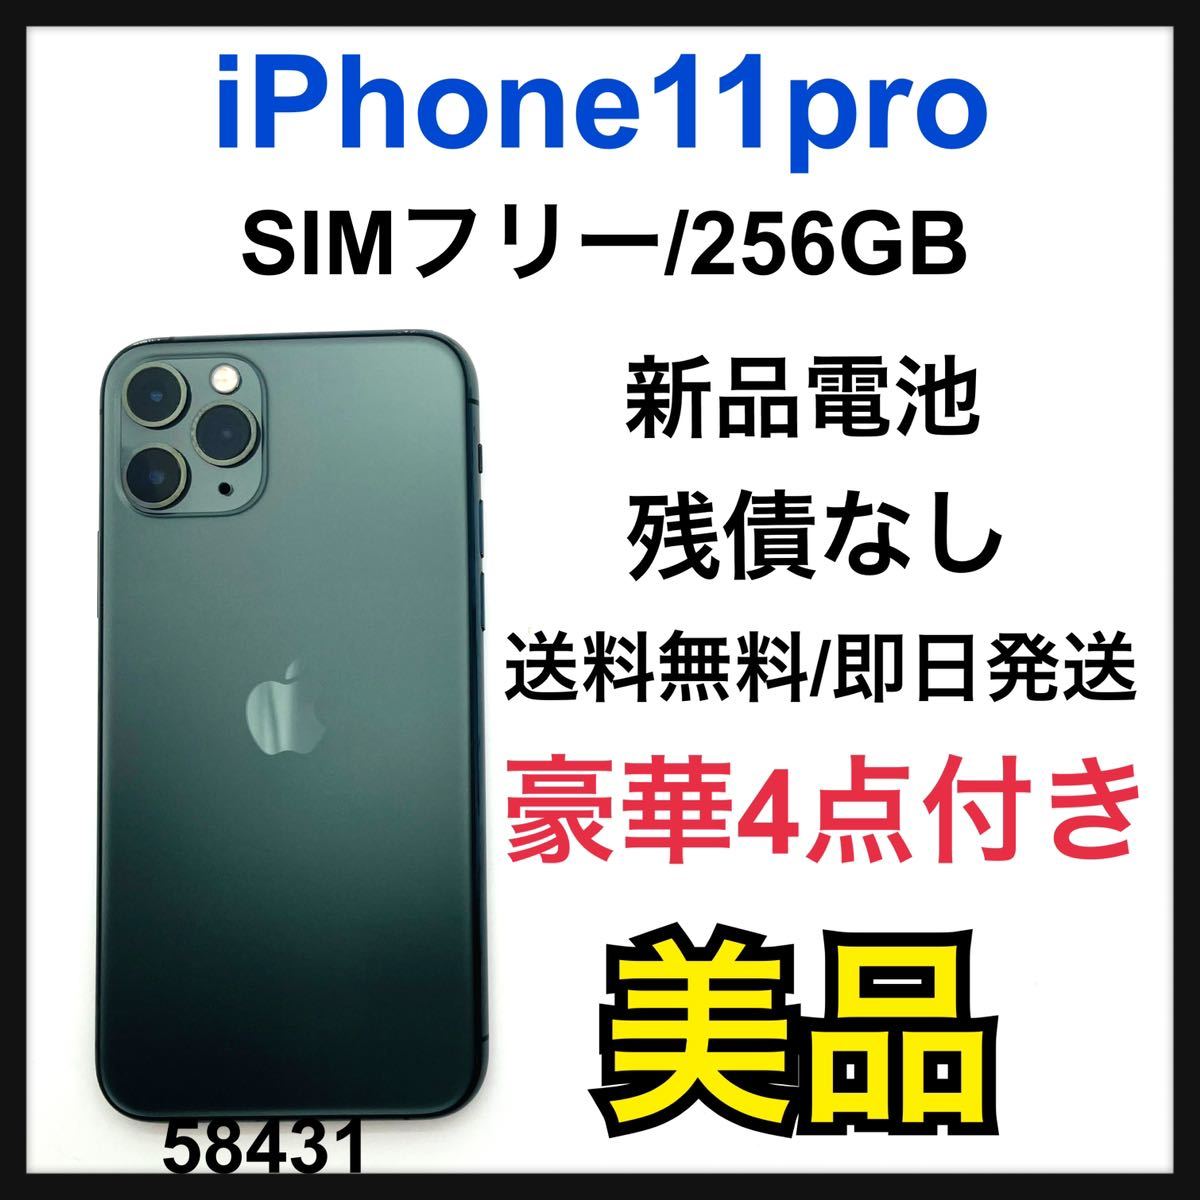 店舗良い B iPhone 11 Pro ミッドナイトグリーン 256 GB SIMフリー